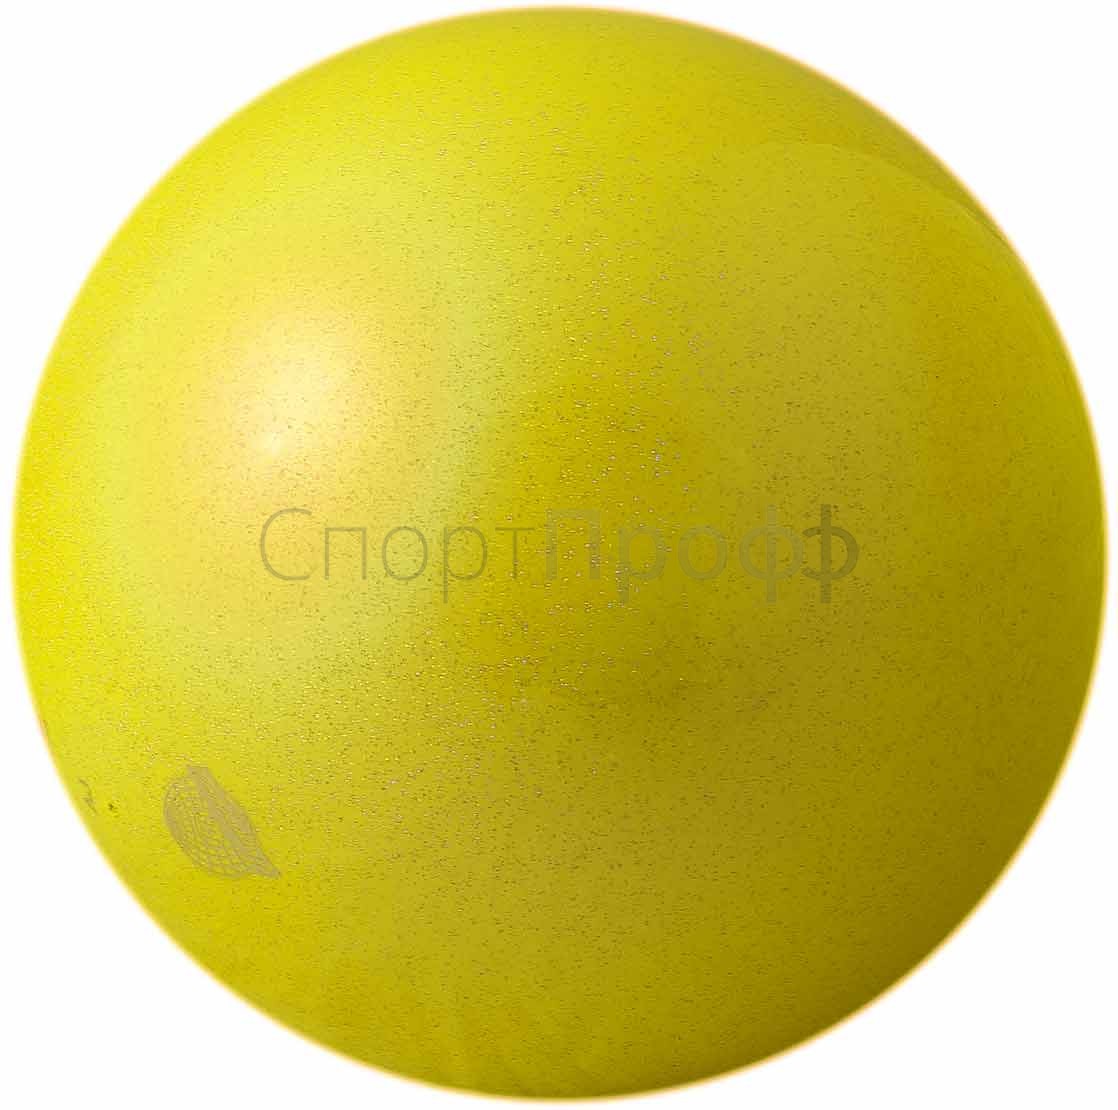 Мяч SASAKI M-207AU 18.5 см. Y (желтый) для художественной гимнастики